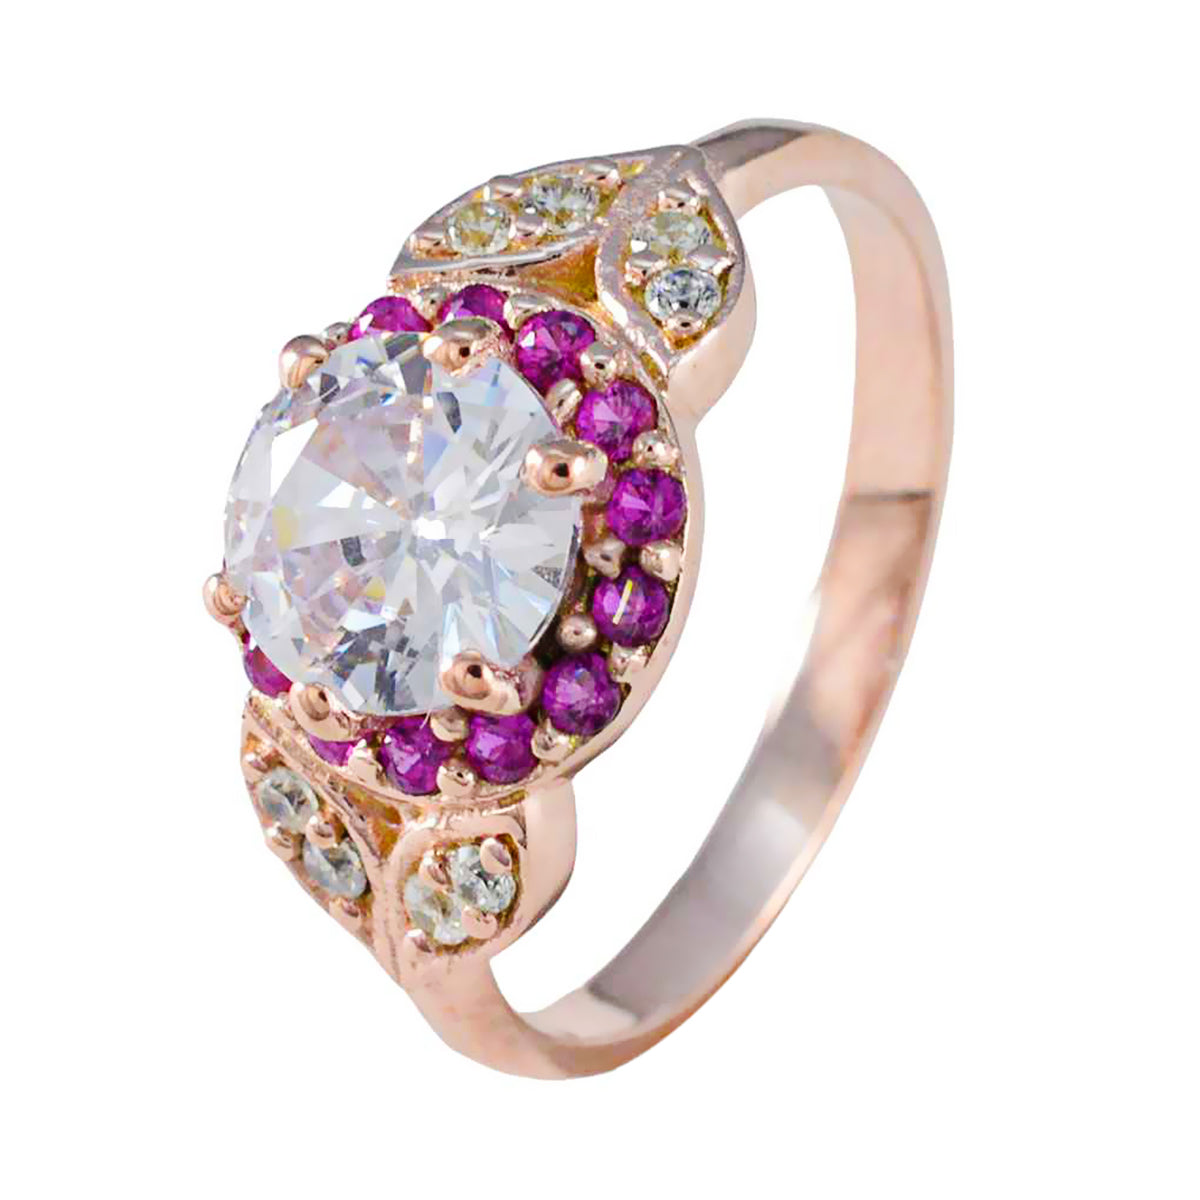 anello completo in argento riyo con placcatura in oro rosa, rubino, pietra cz, forma rotonda, montatura a punta, gioielli antichi, anello per la festa del papà